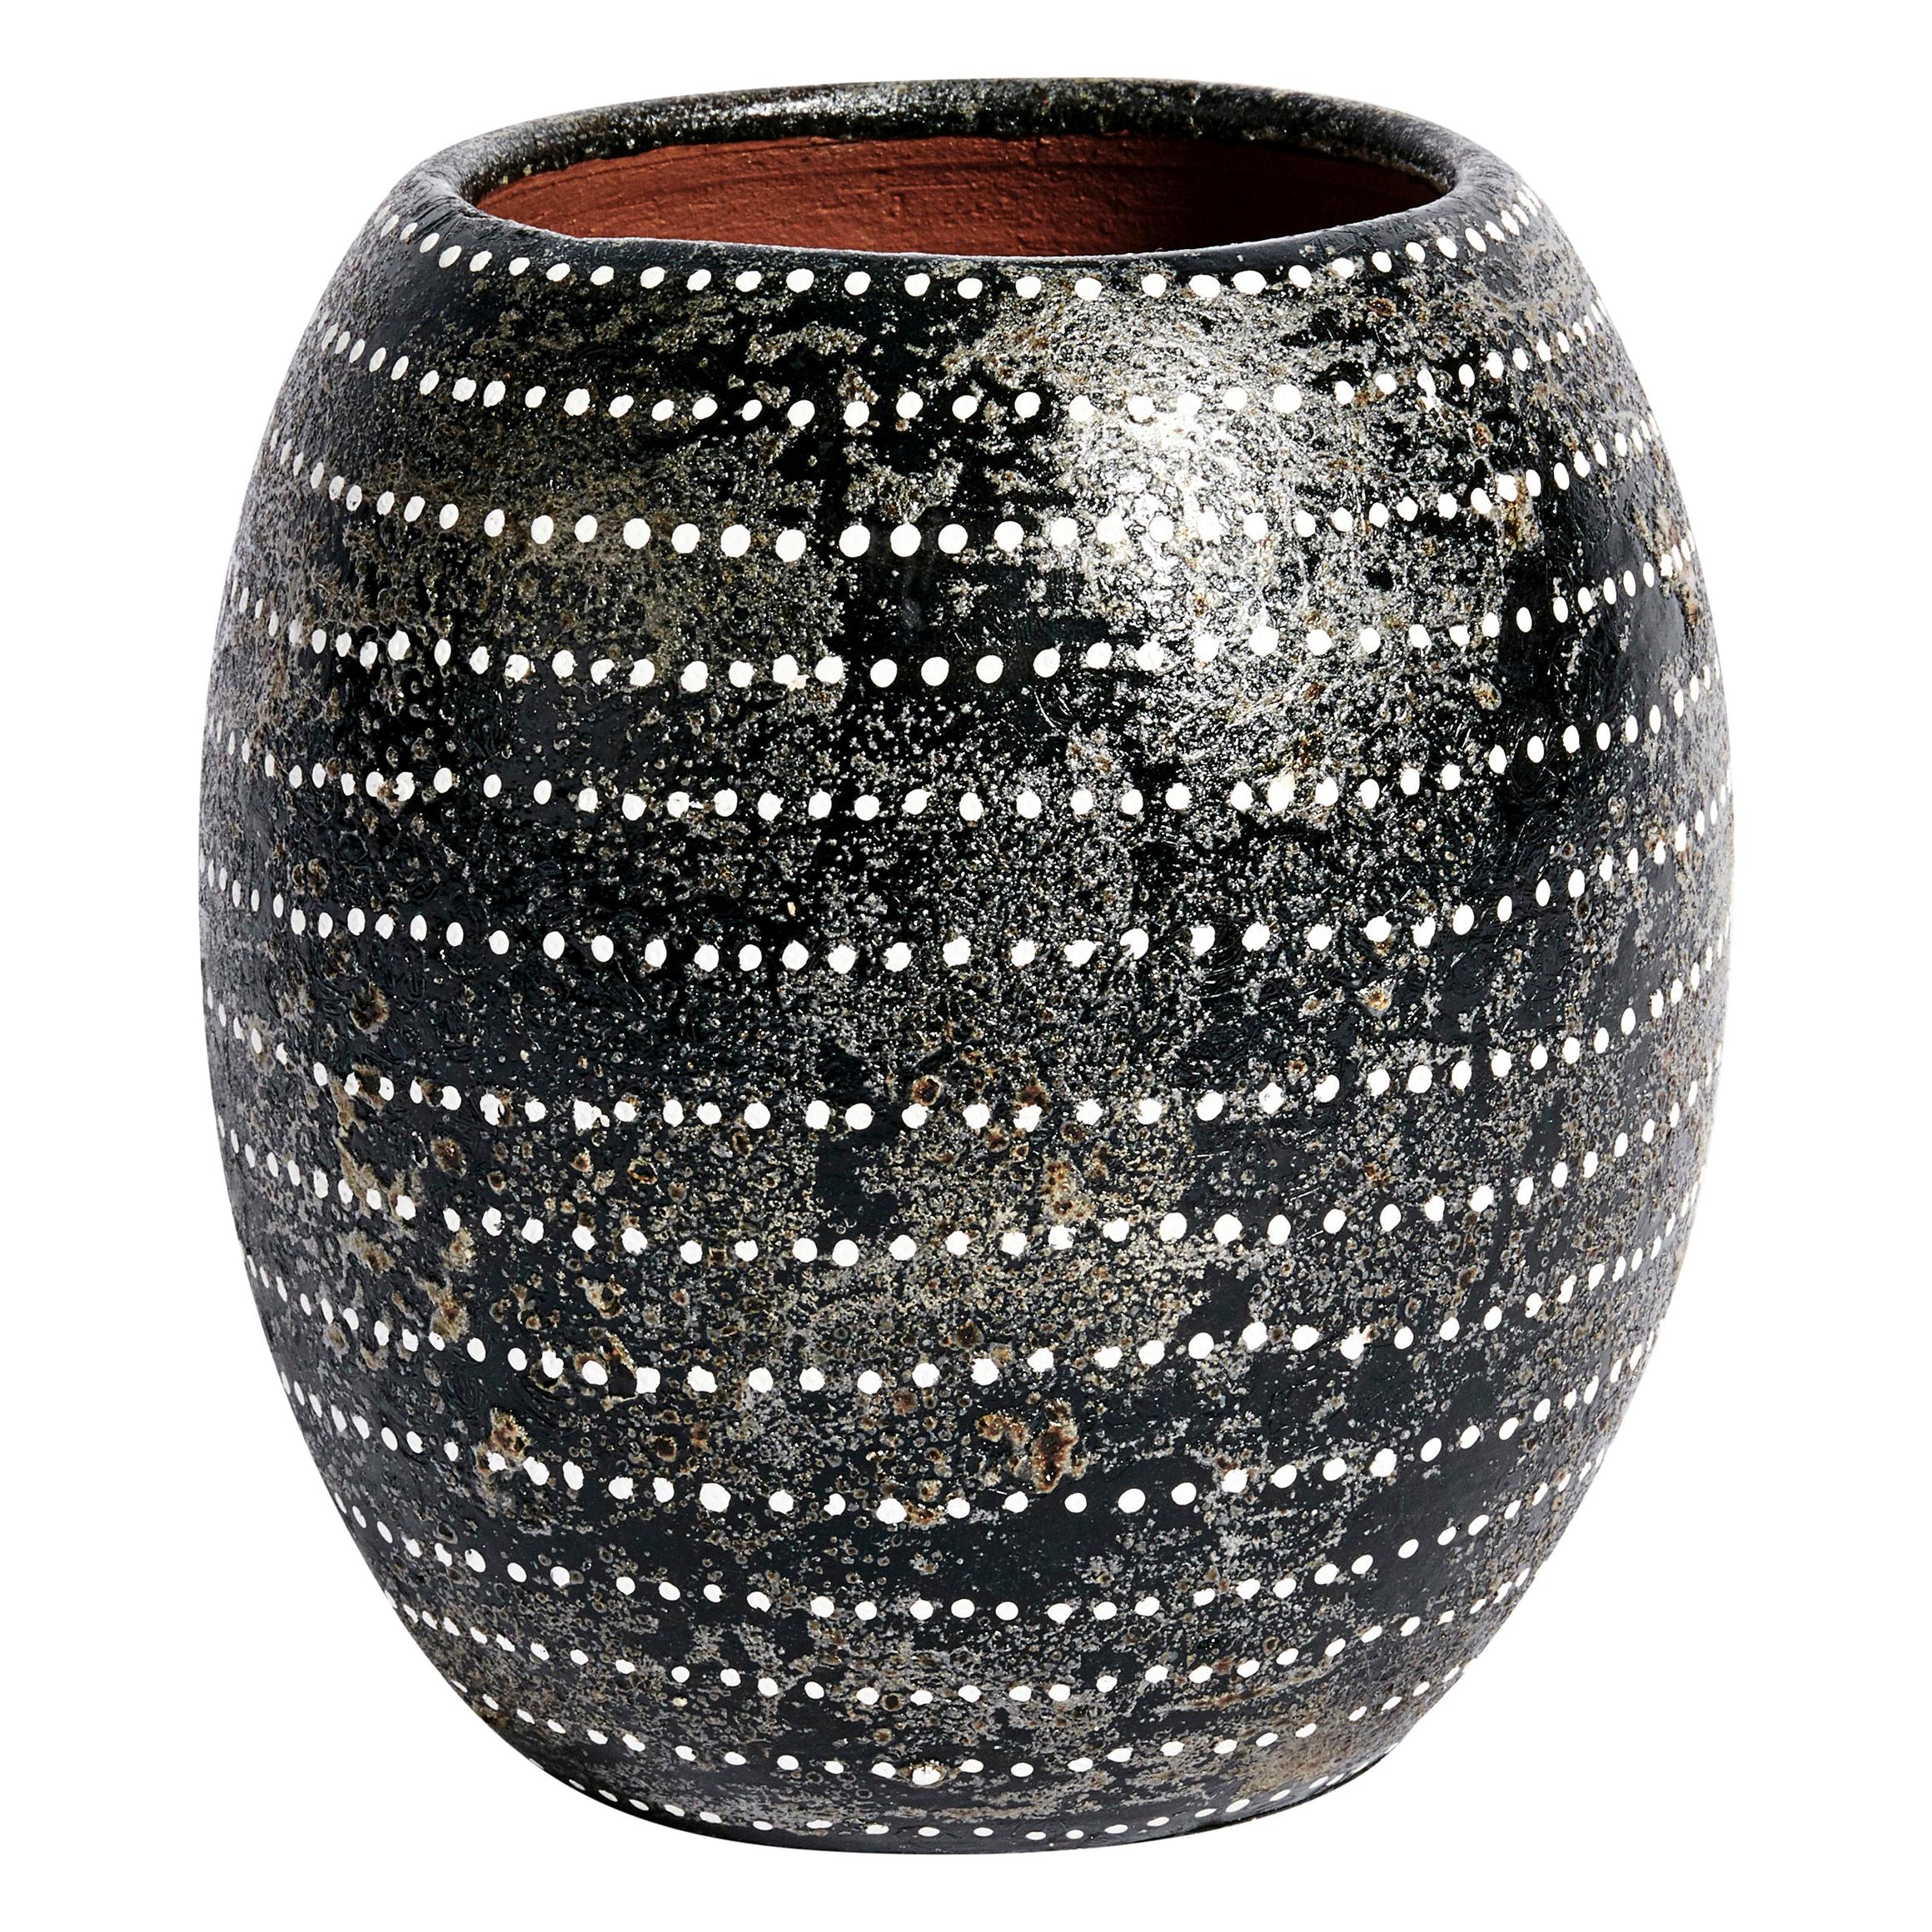 Akin Vase in Black Ceramic by CuratedKravet